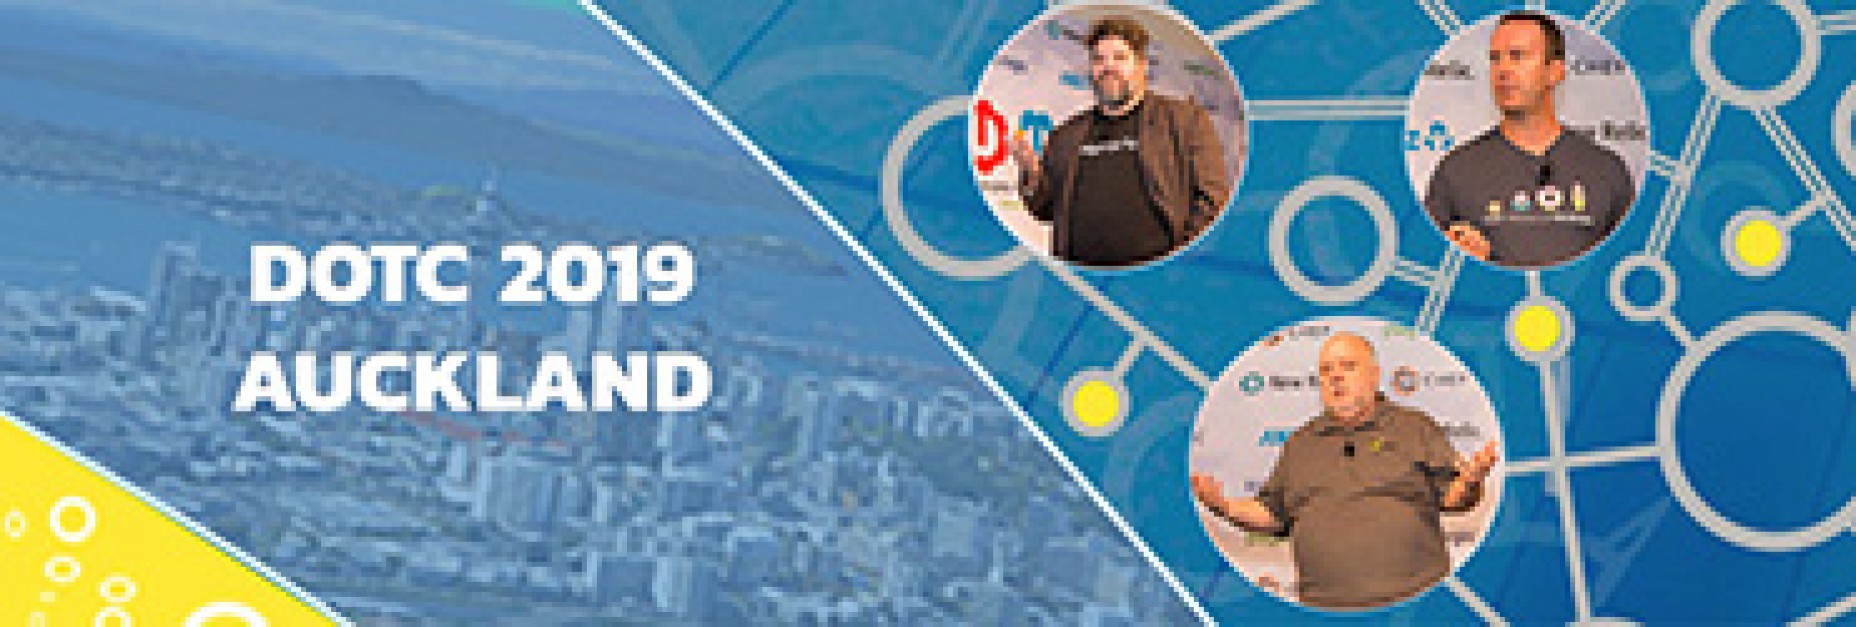 DevOps Conference Auckland 2019